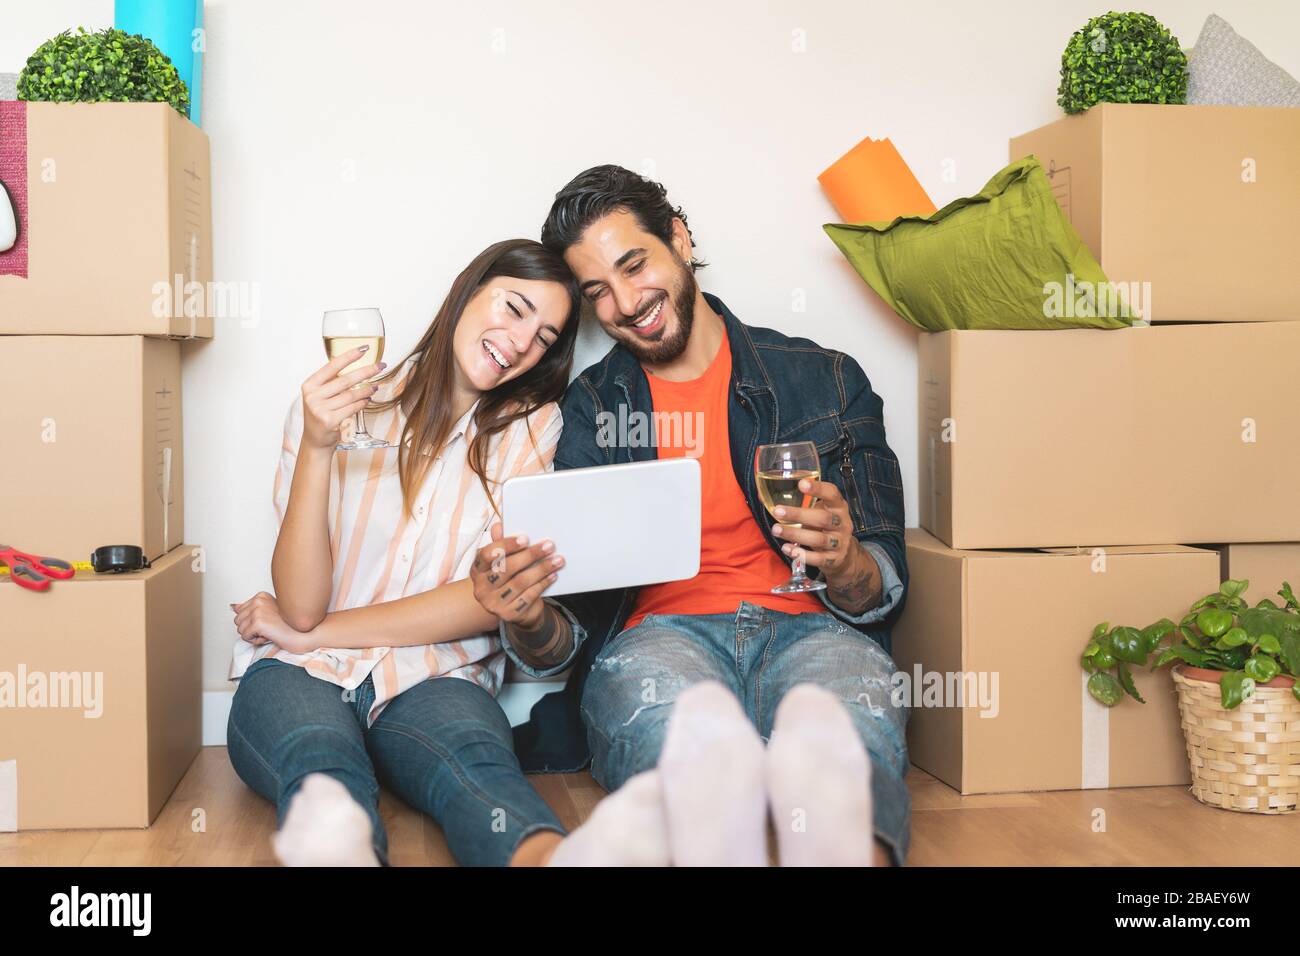 Glückliches junges Paar zieht in ein neues Haus - junge Liebhaber haben Spaß mit Tablet-PC-Shopping online sitzend neben Karton Stockfoto